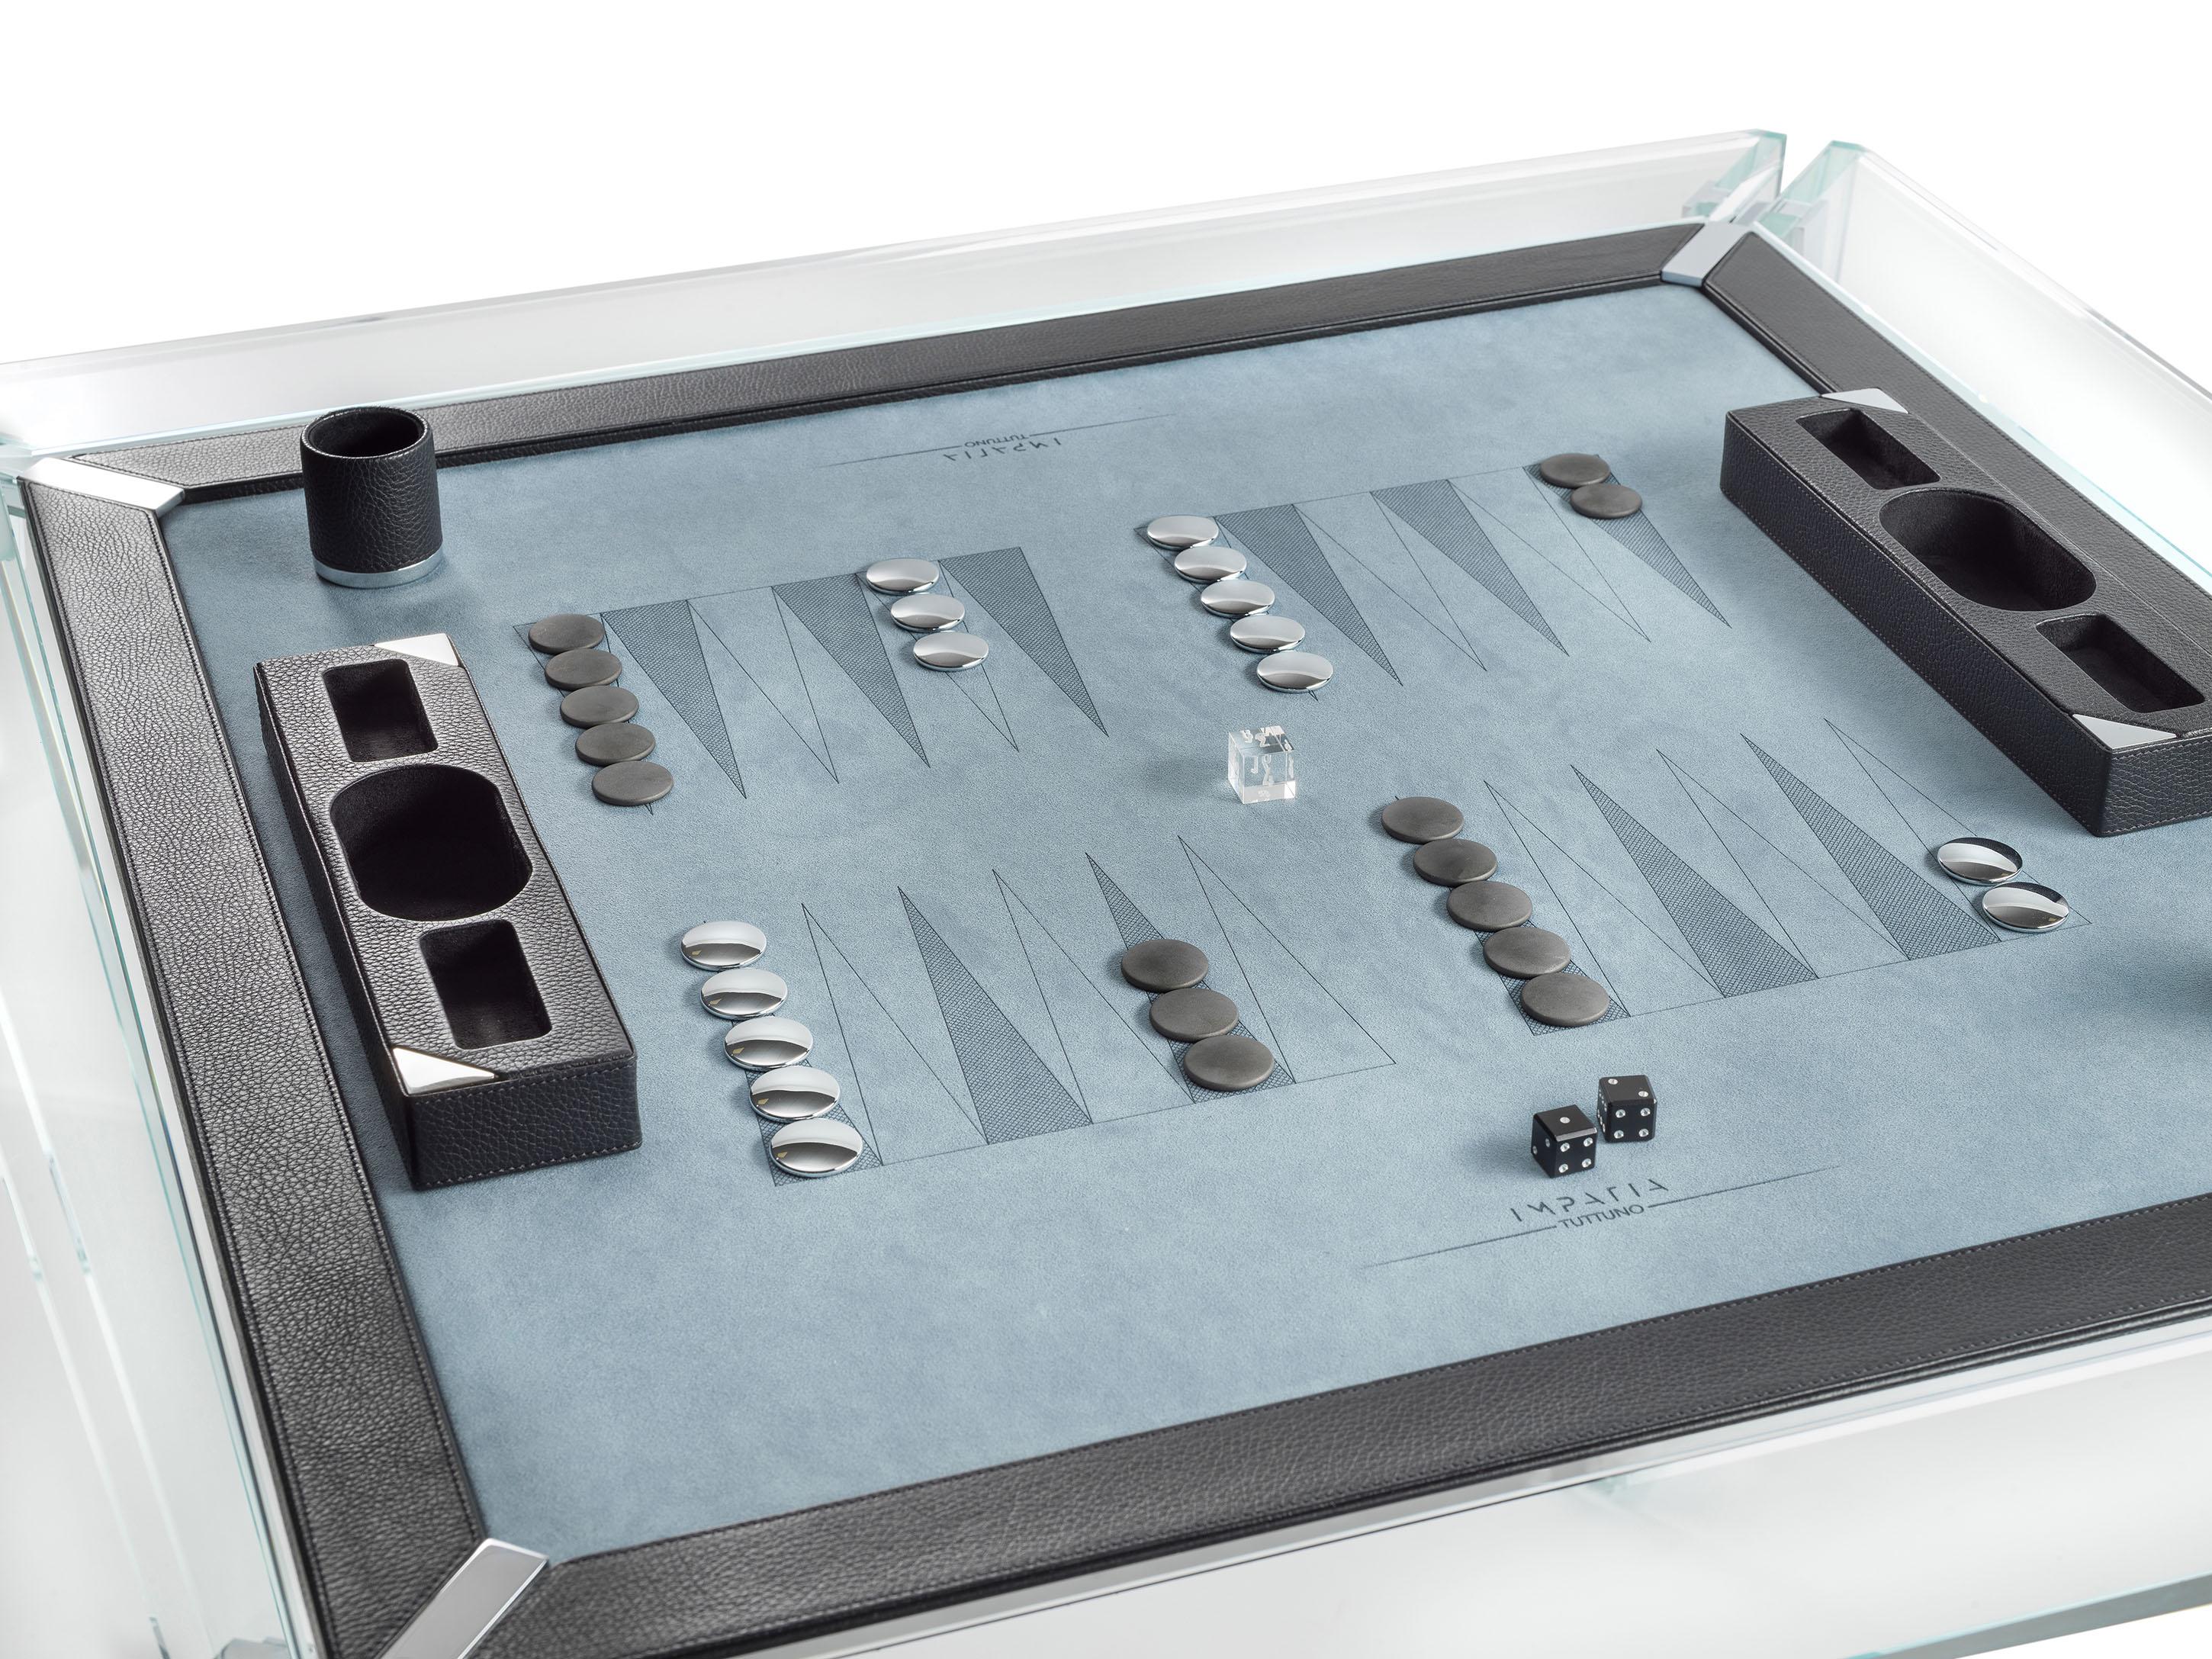 La table de jeu de backgammon Tuttuno édition cuir est conçue pour accueillir deux joueurs avec une surface de jeu de backgammon intégrée. Le design minimaliste donne l'impression unique que la table flotte.

Cette table Tuttuno est dotée d'une